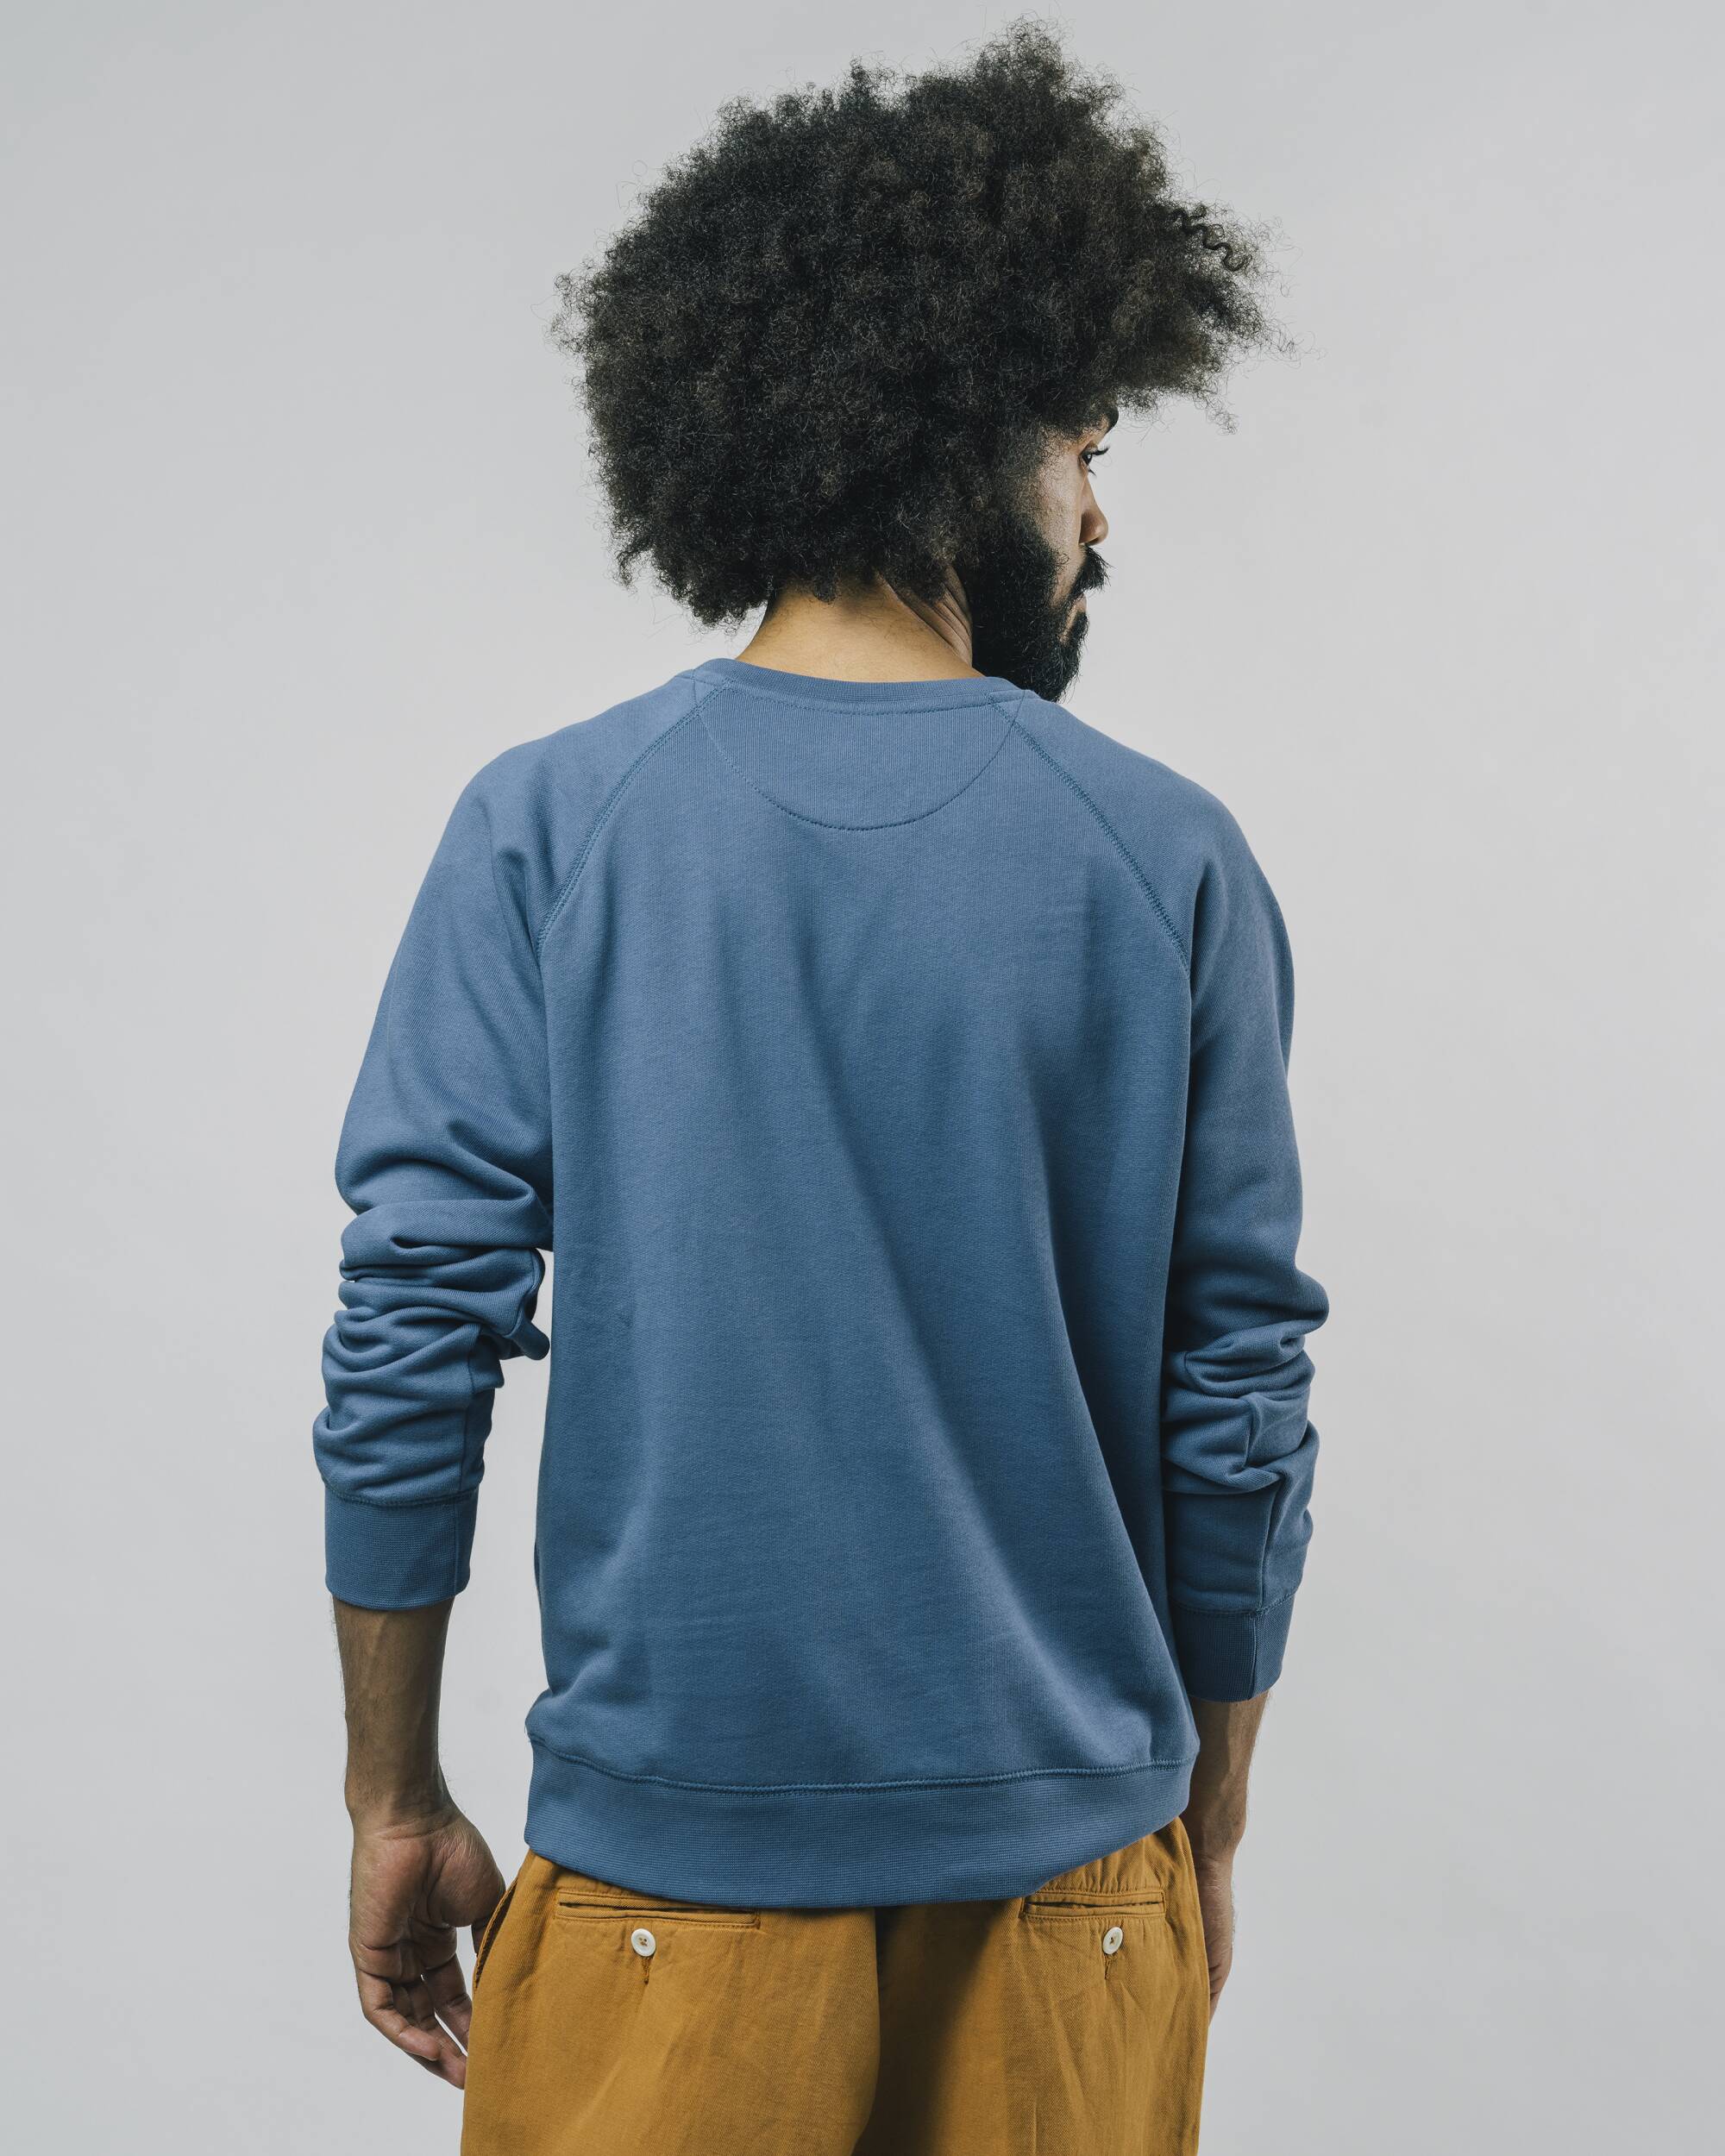 Blauer Pullover Take Away aus 100% Bio-Baumwolle von Brava Fabrics